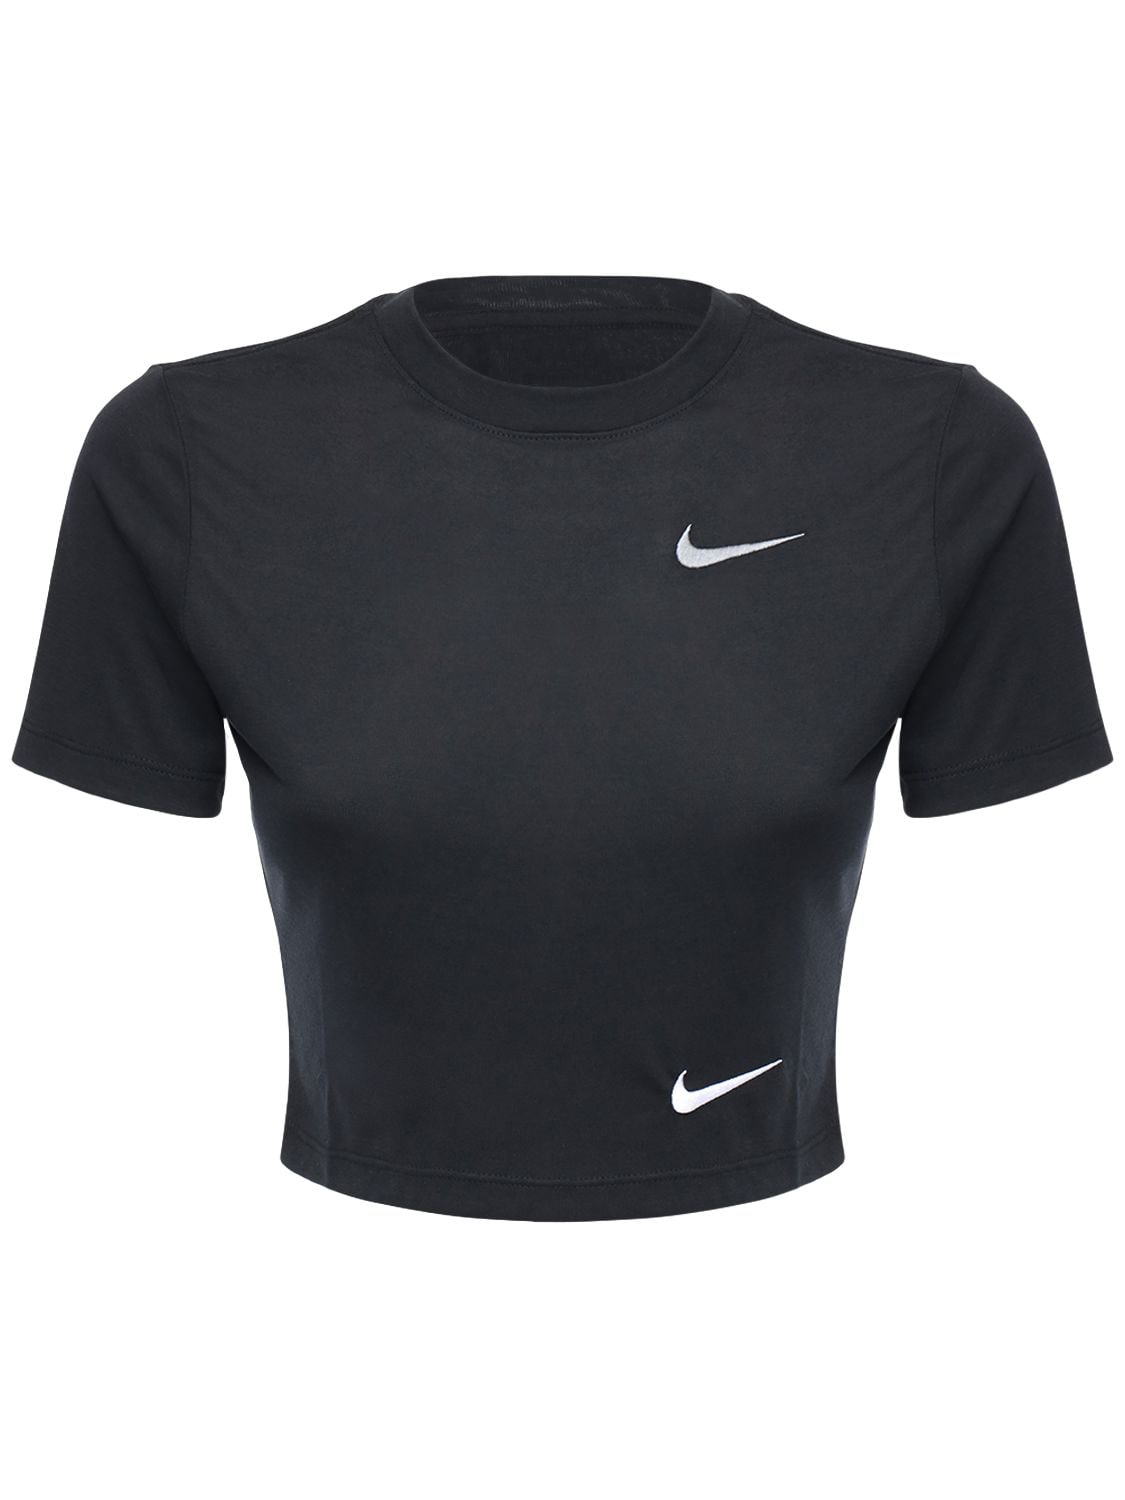 Nike Logo Print Slim Cropped Jersey T-shirt In Black